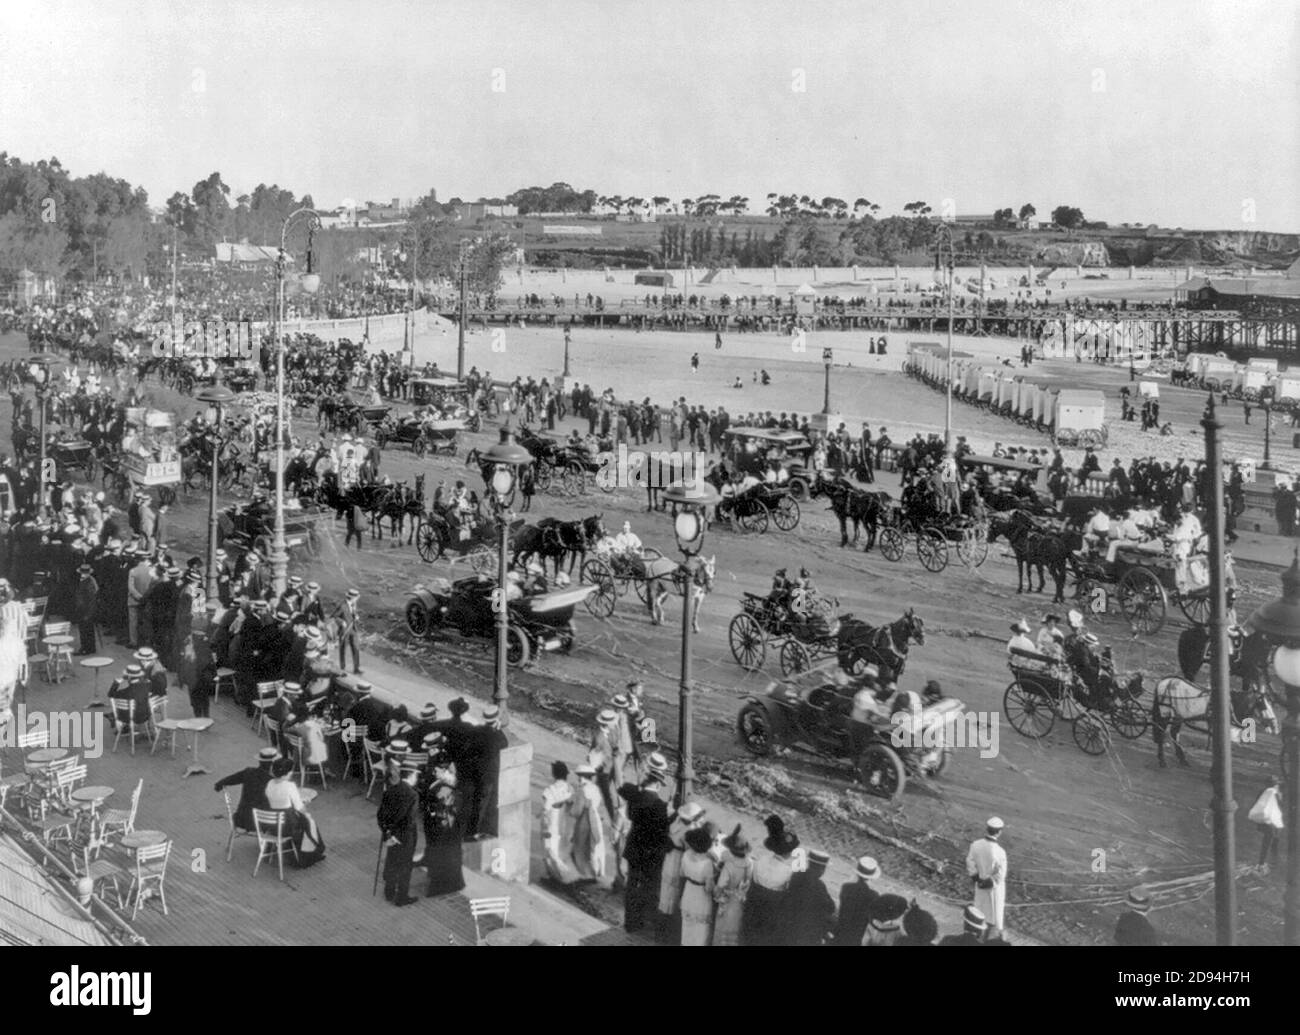 Scène au festival de 1914; parade d'automobiles et de calèches le long du boulevard en bord de mer; rangées de bains à 4 roues sur la plage. Montevideo, Uruguay Banque D'Images